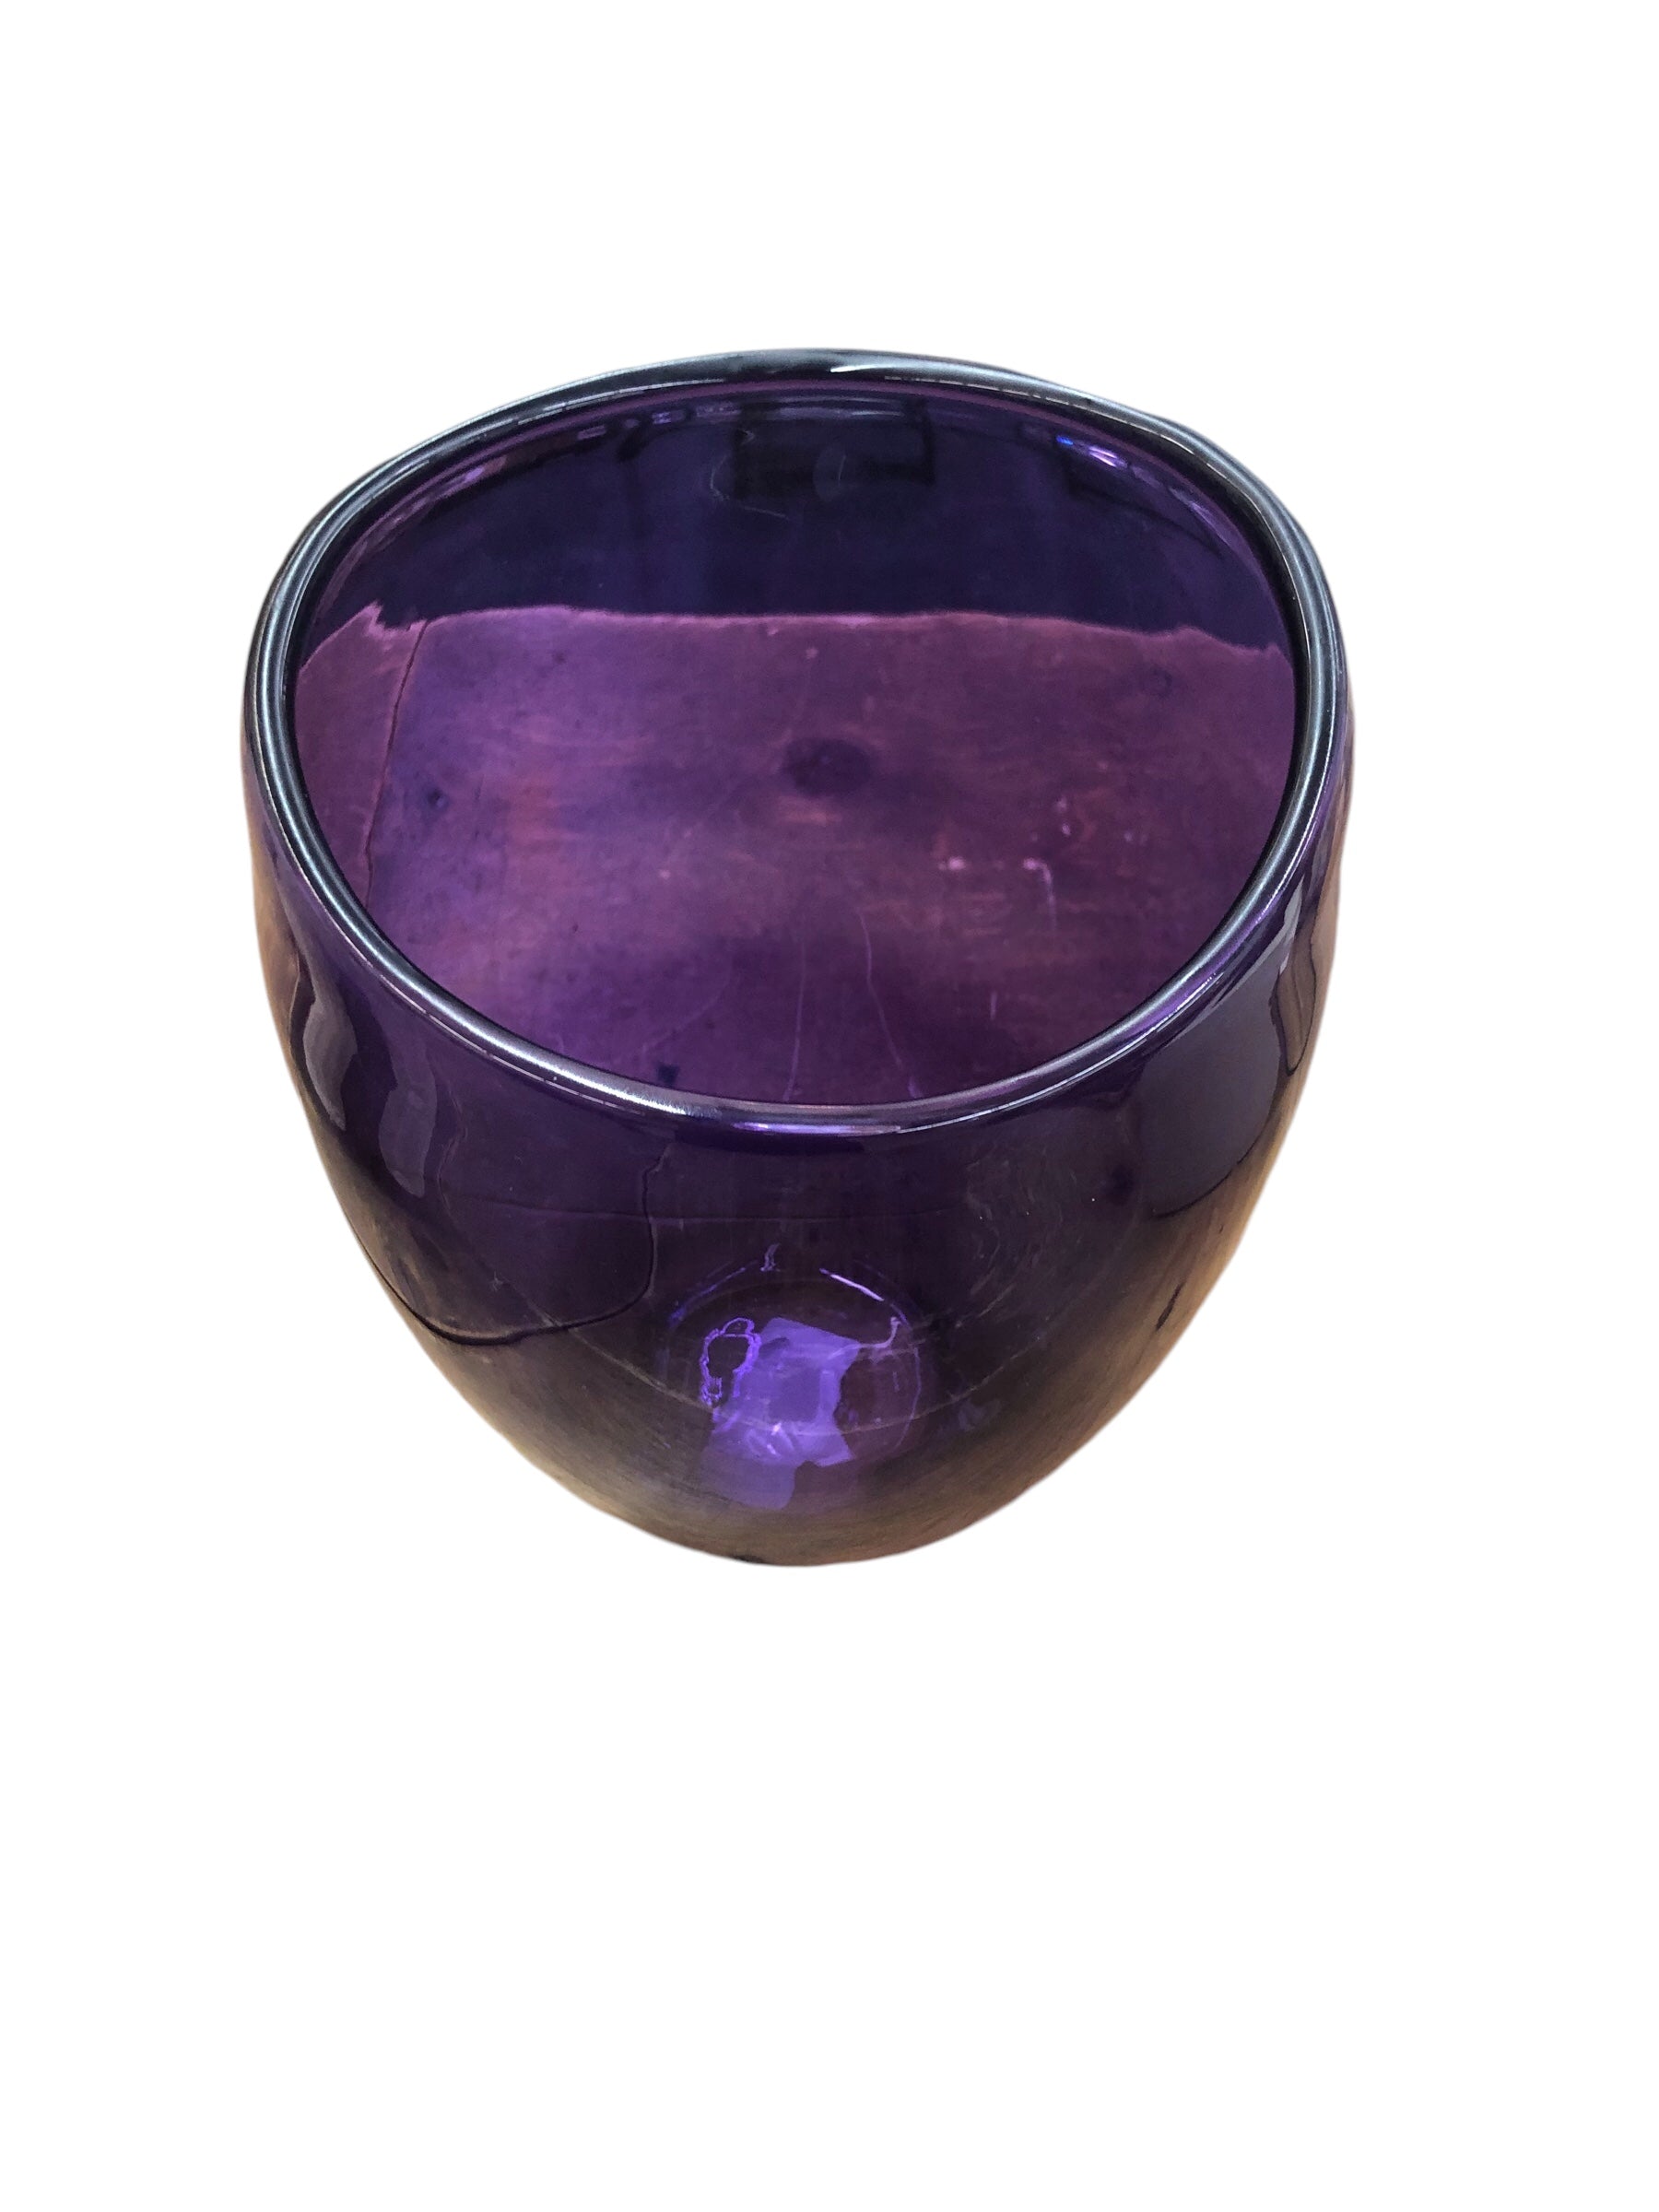 Heavy Purple Vase